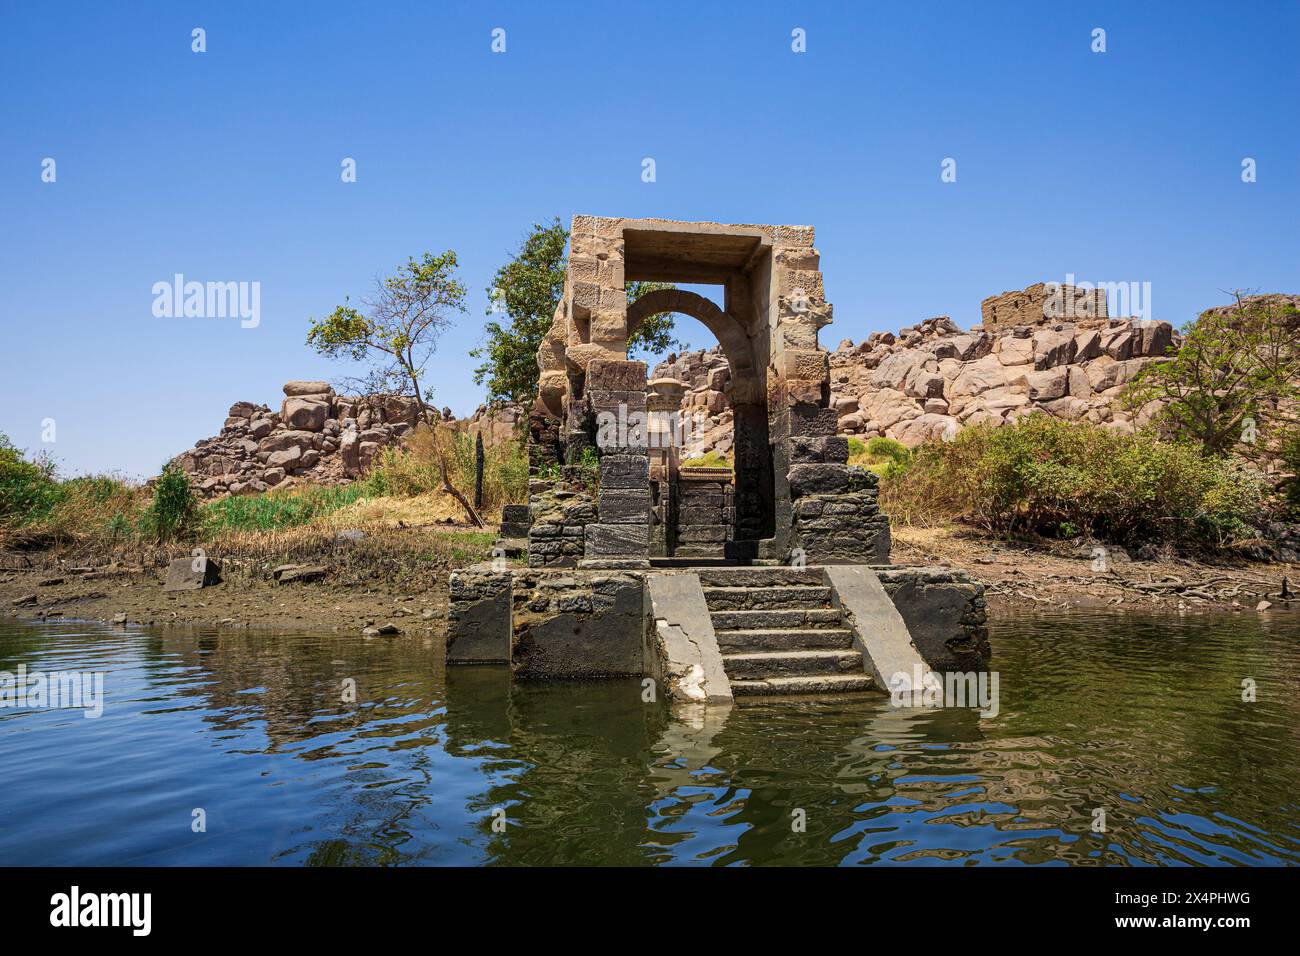 La porte du temple du Sanctuaire d'Isis, qui fait partie du complexe du temple de Philae (un site du patrimoine mondial de l'UNESCO) sur l'île Bigeh (Nubie), Égypte Banque D'Images